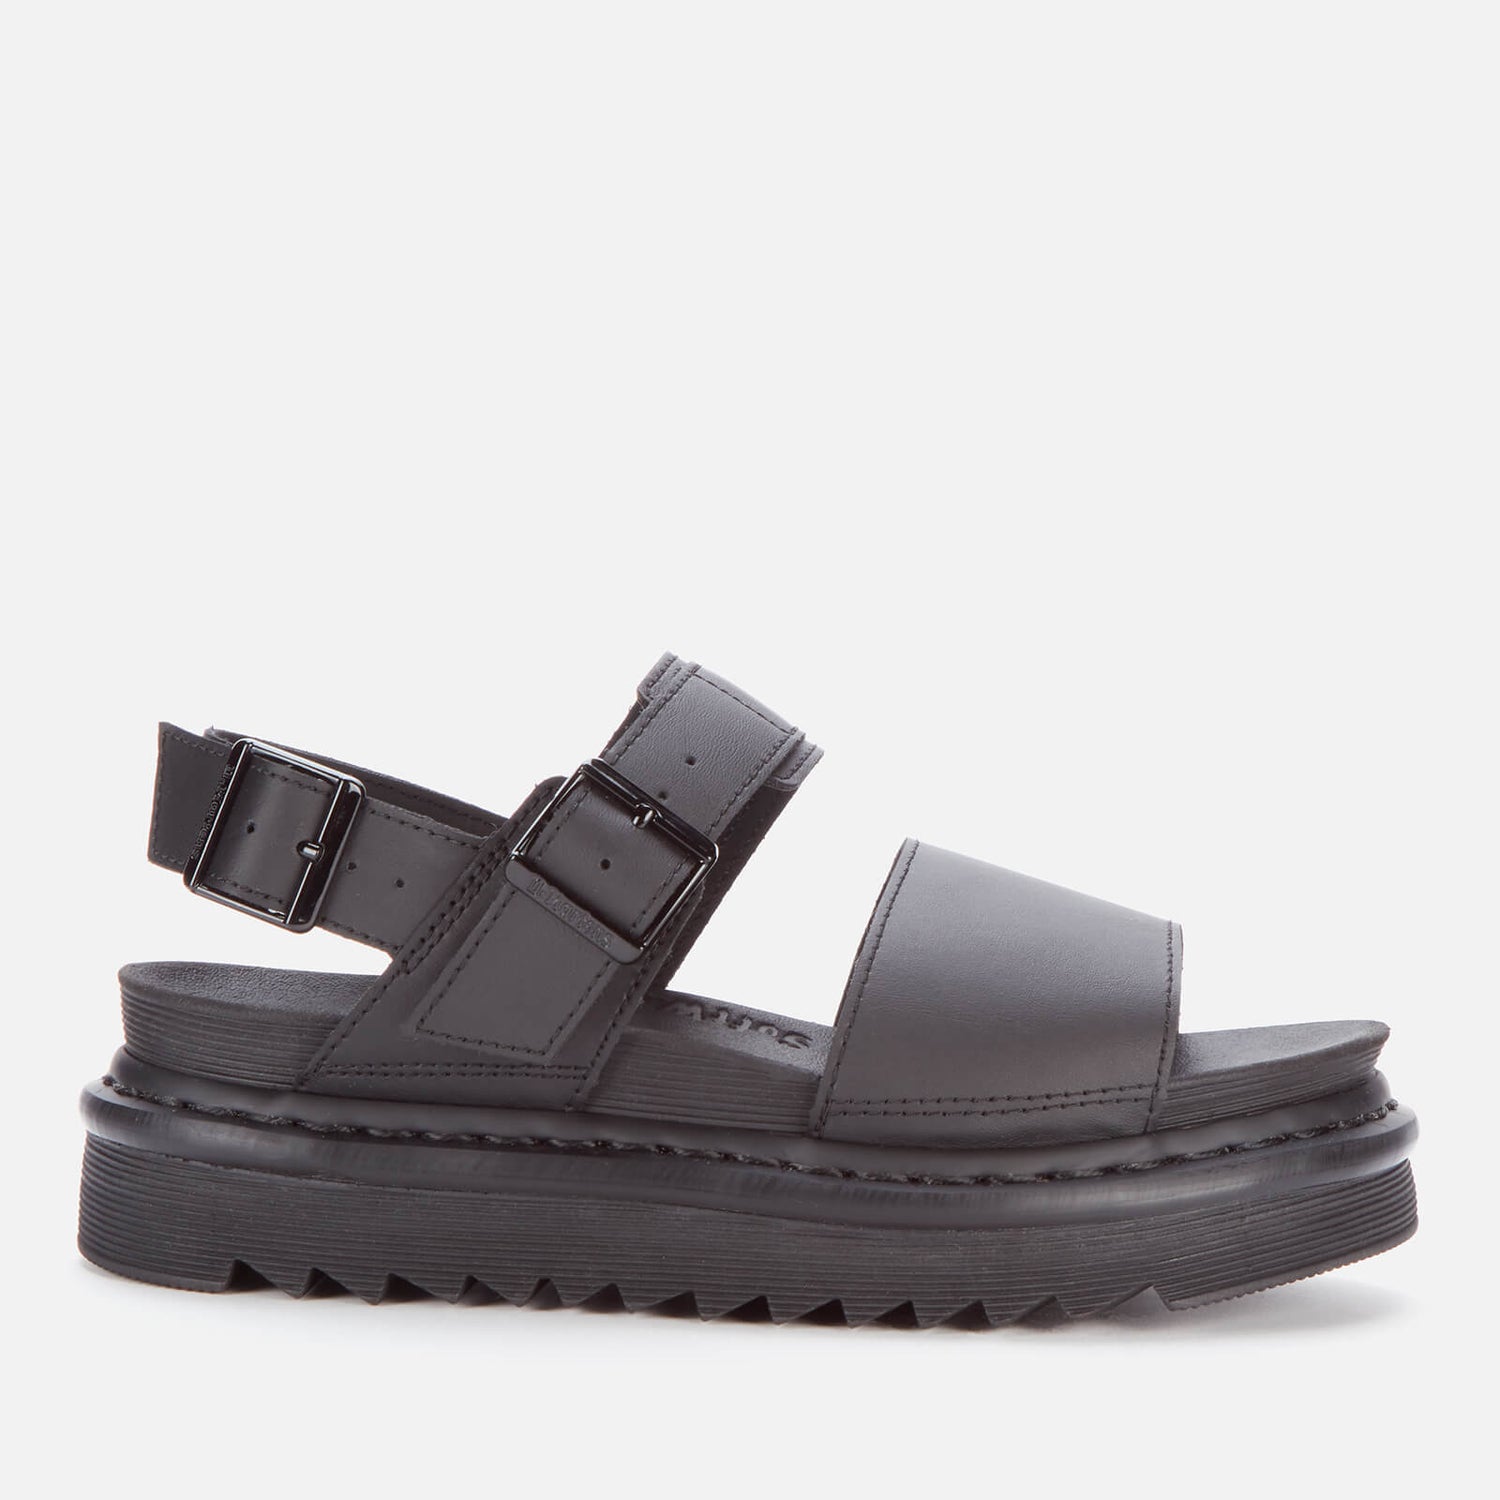 Dr. Martens Women's Voss Leather Double Strap Sandals - Black - UK 3